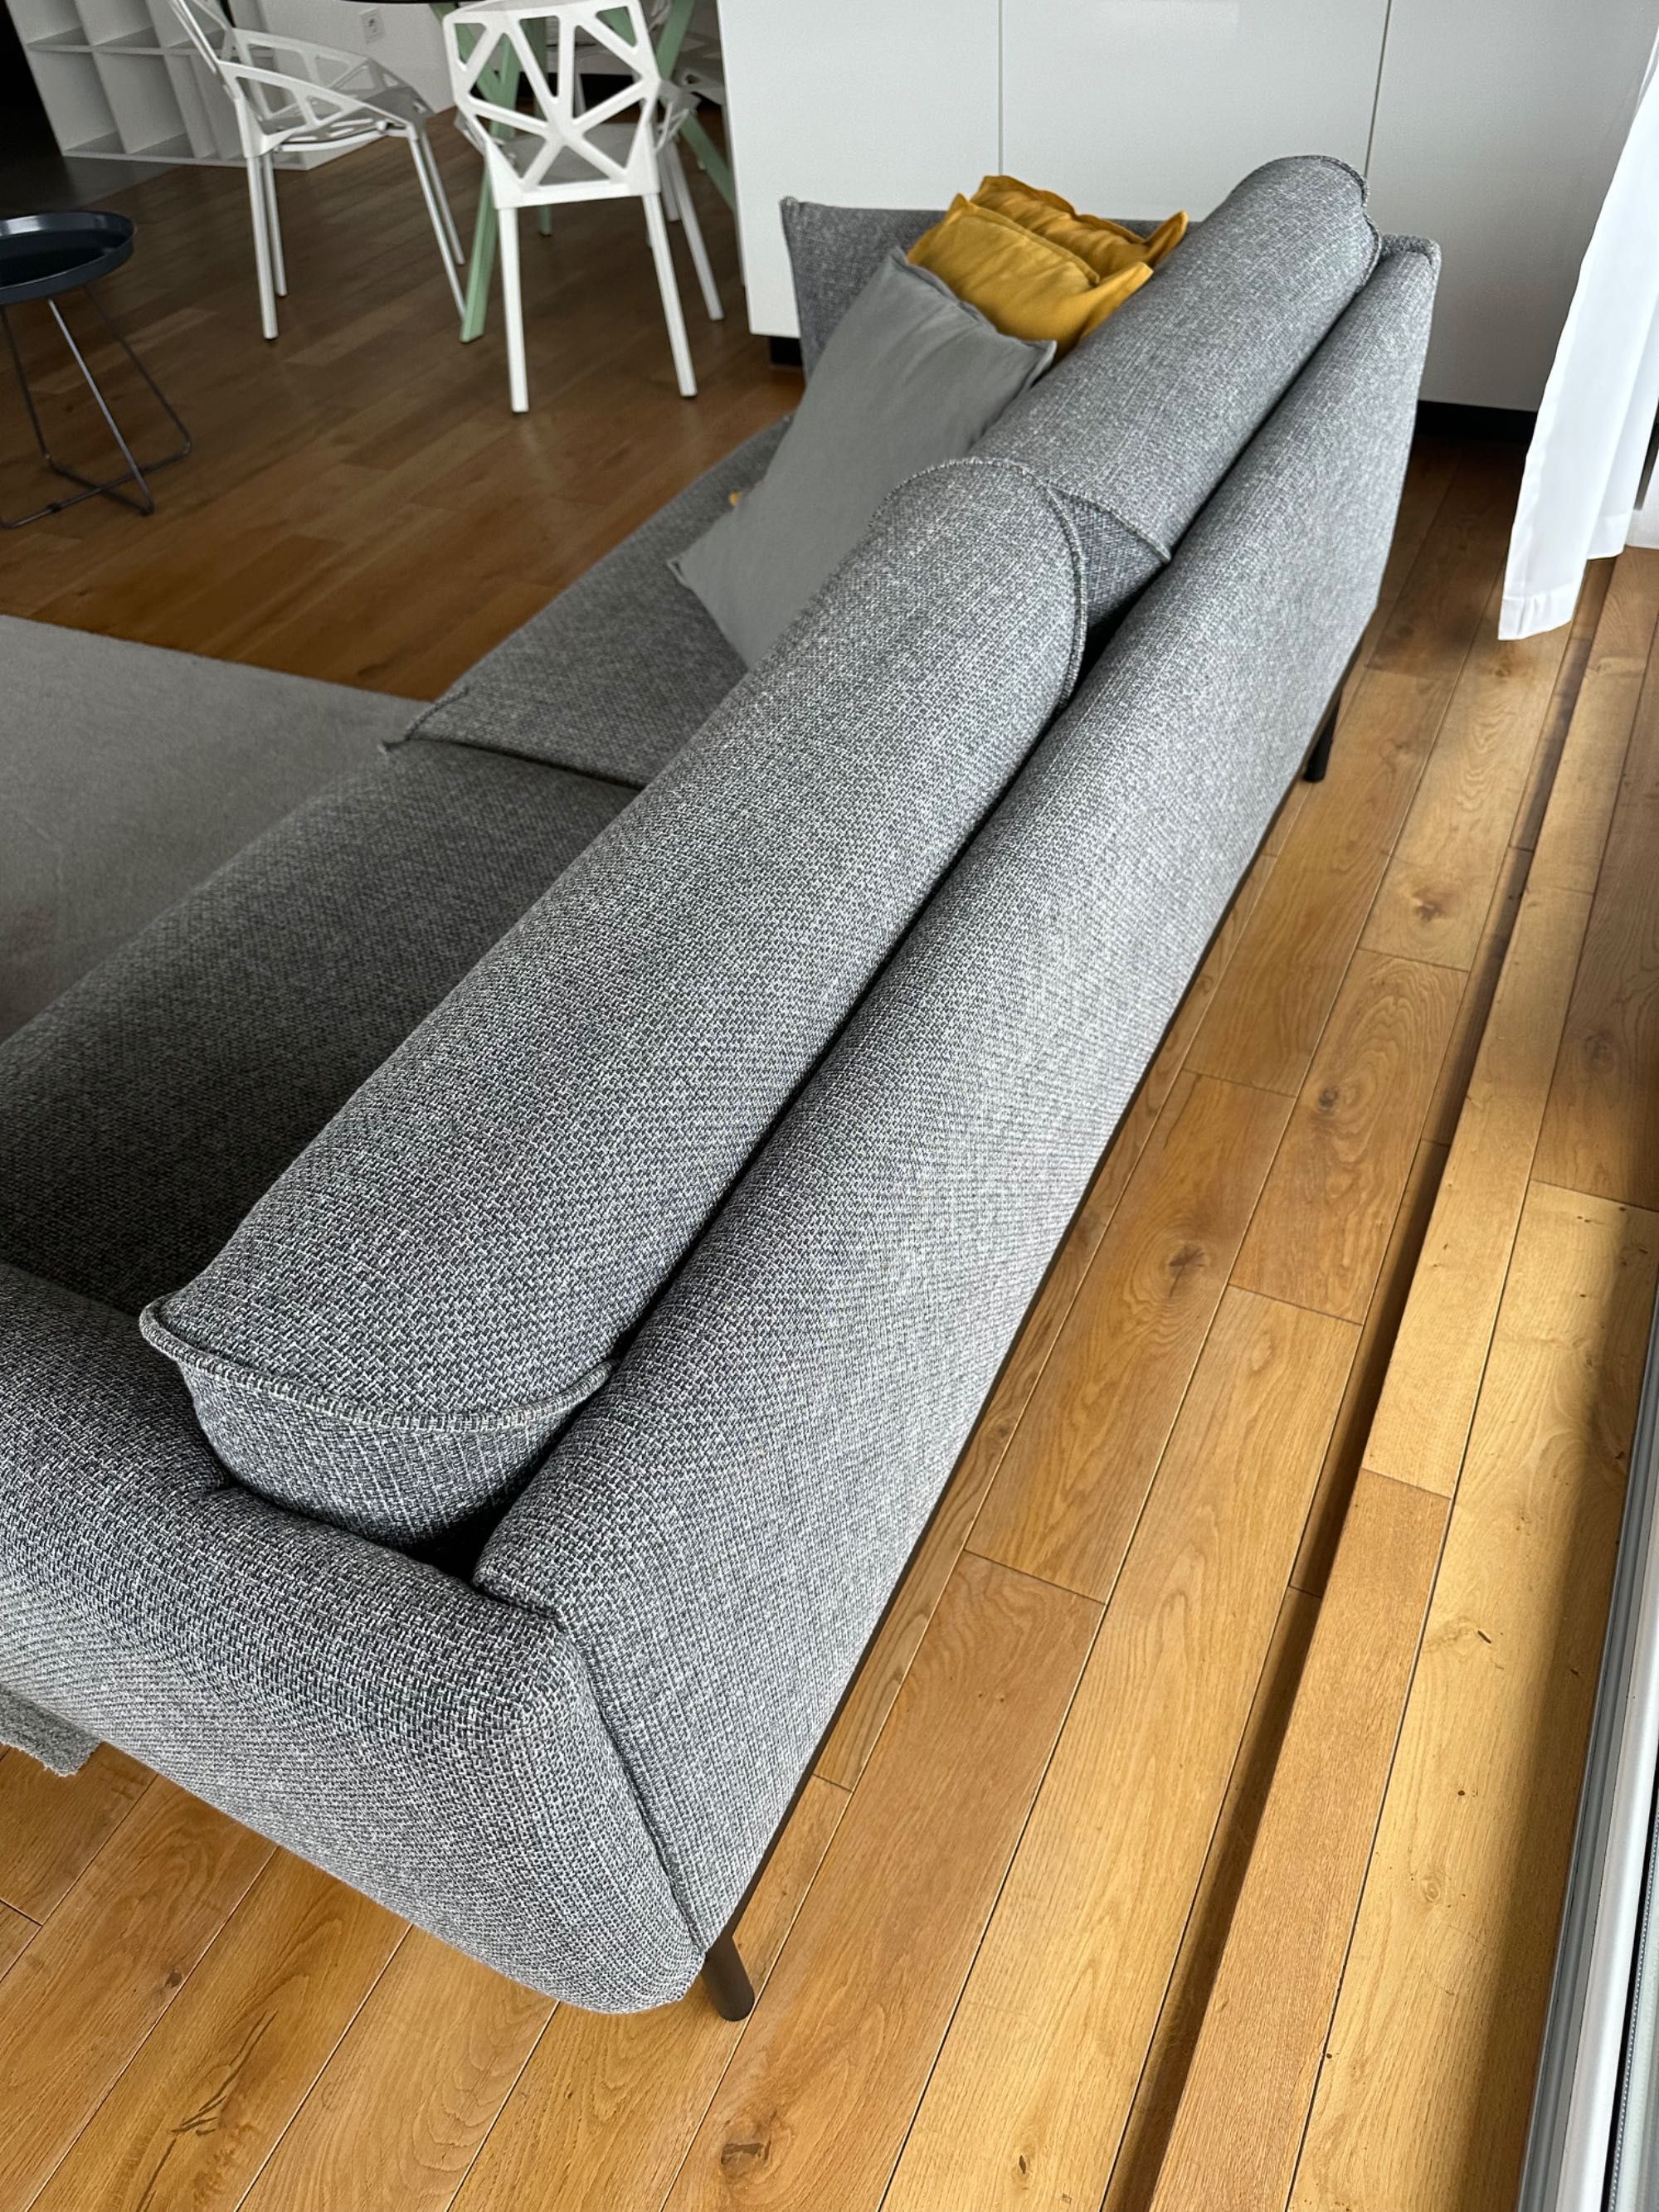 Sofa Ikea Applaryd szara